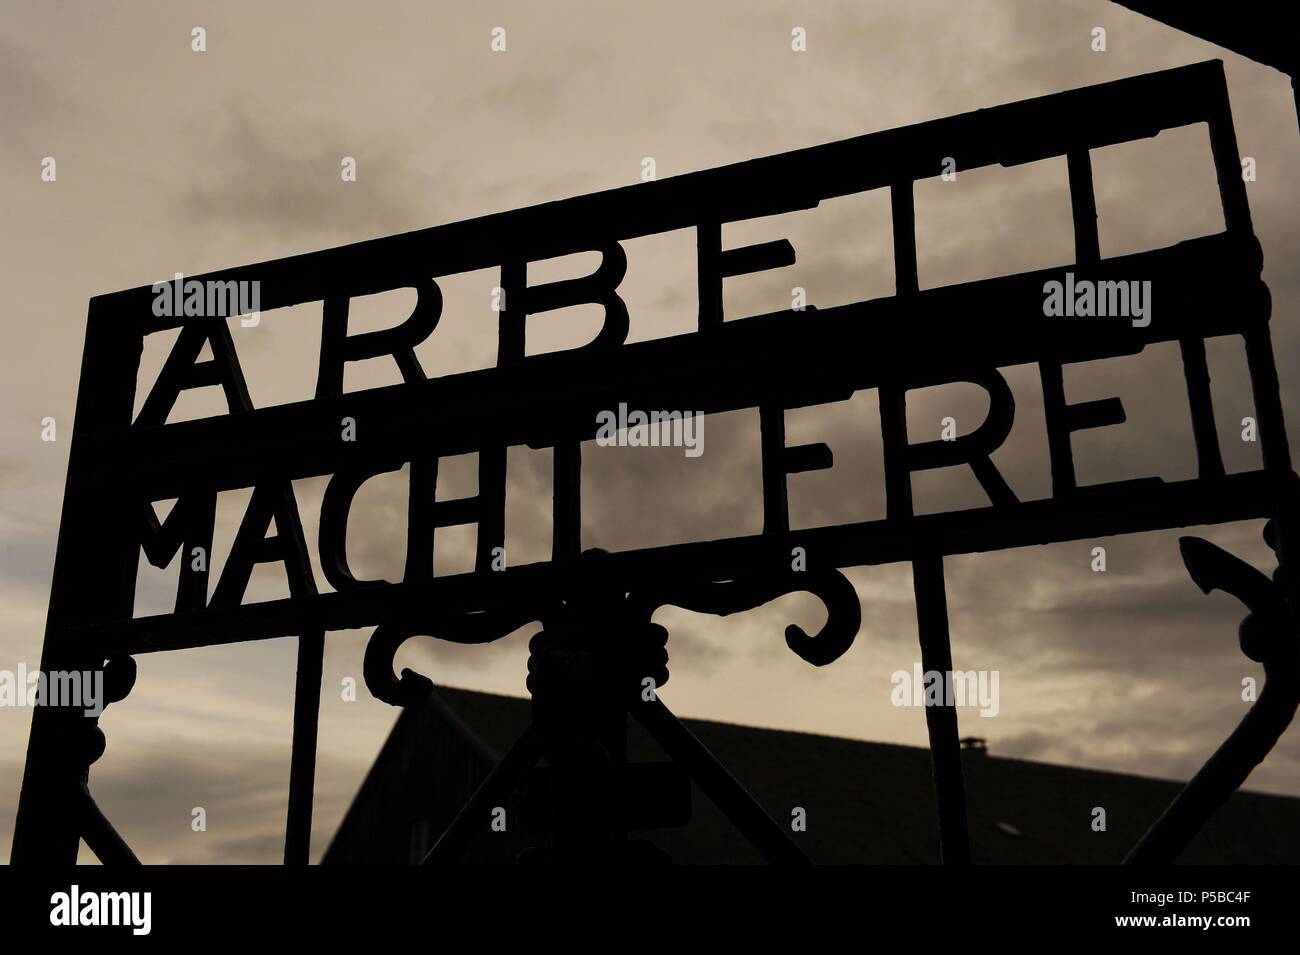 Camp de concentration de Dachau. Camp de prisonniers nazis a ouvert ses portes en 1933. Détail du slogan Arbeit macht frei (le travail rend libre) à la porte principale. L'Allemagne. Banque D'Images